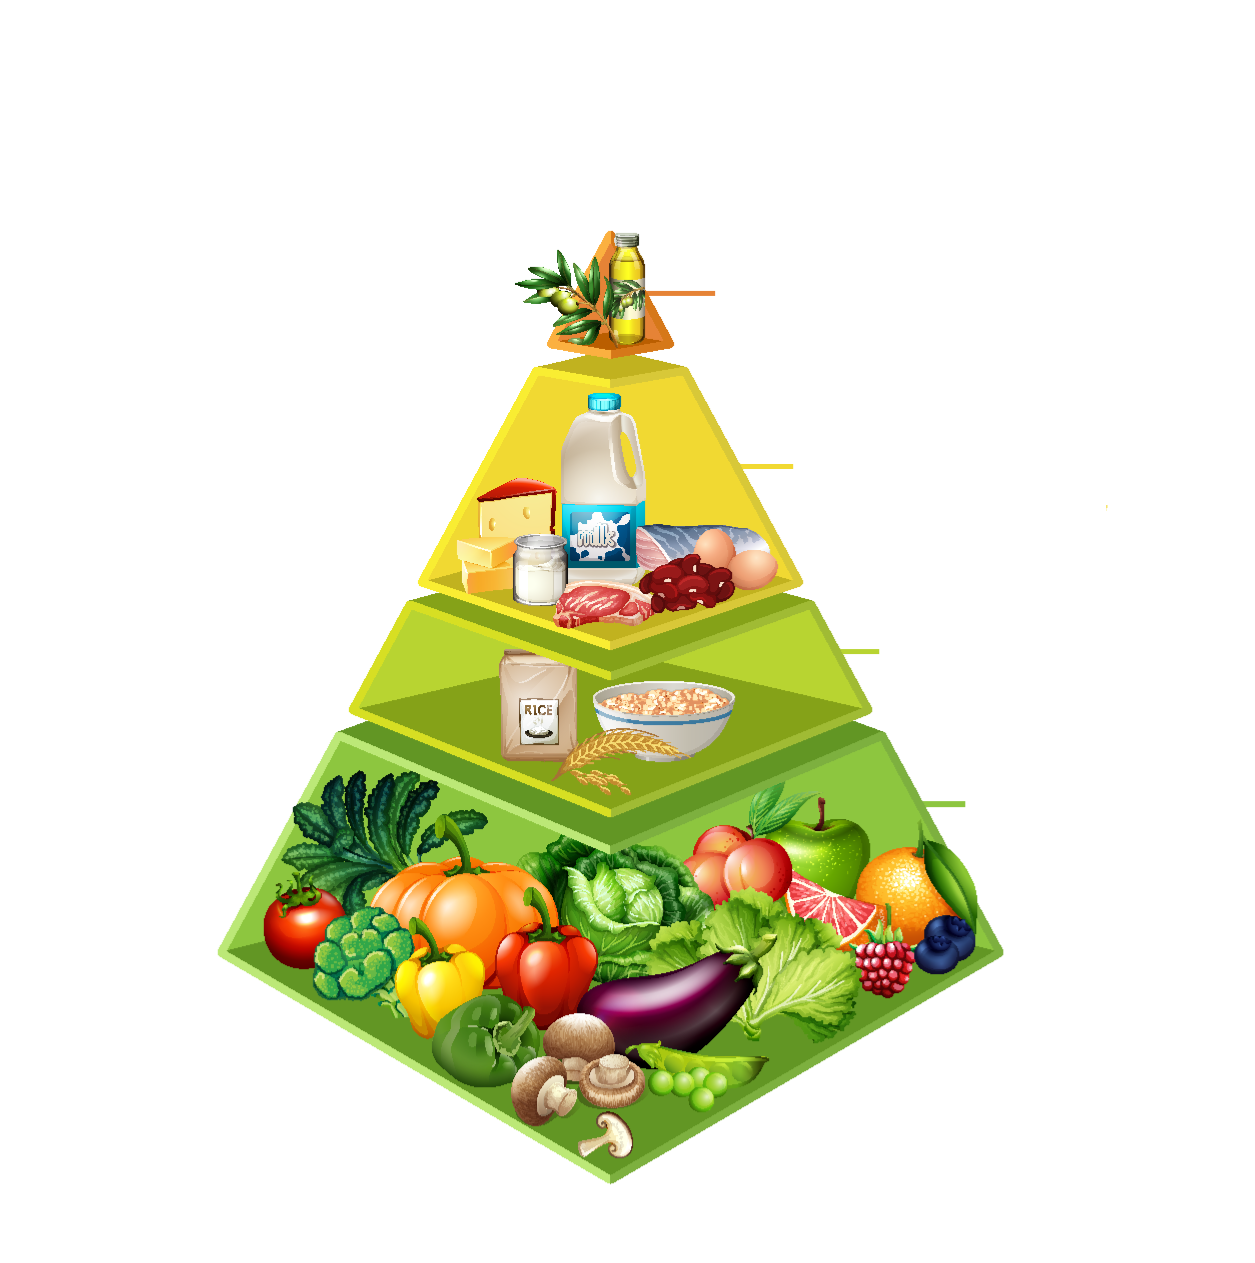 w Polsce piramida żywienia dla dzieci i młodzieży oraz osób starszych